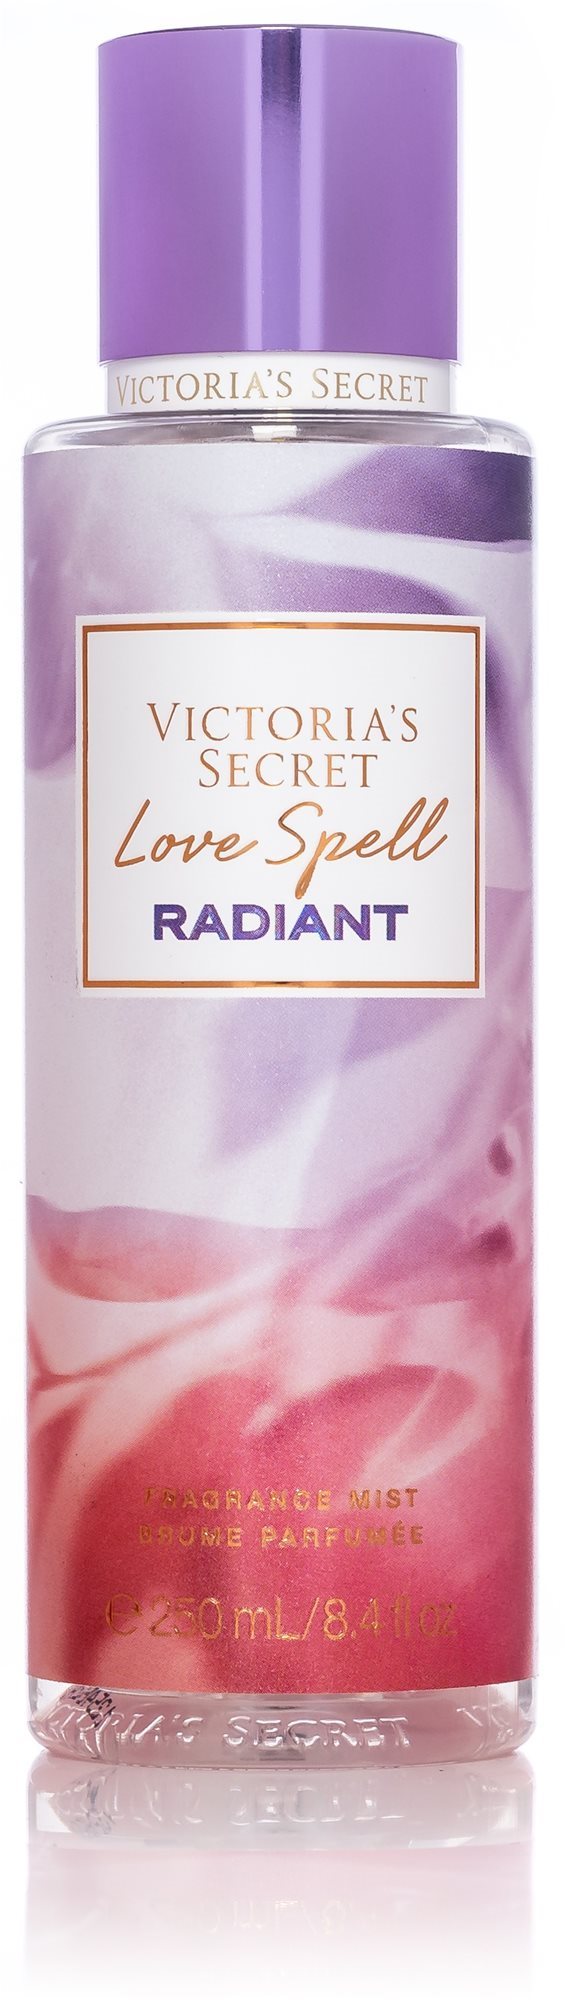 Testpermet VICTORIA'S SECRET Lovespell Radiant 250 ml